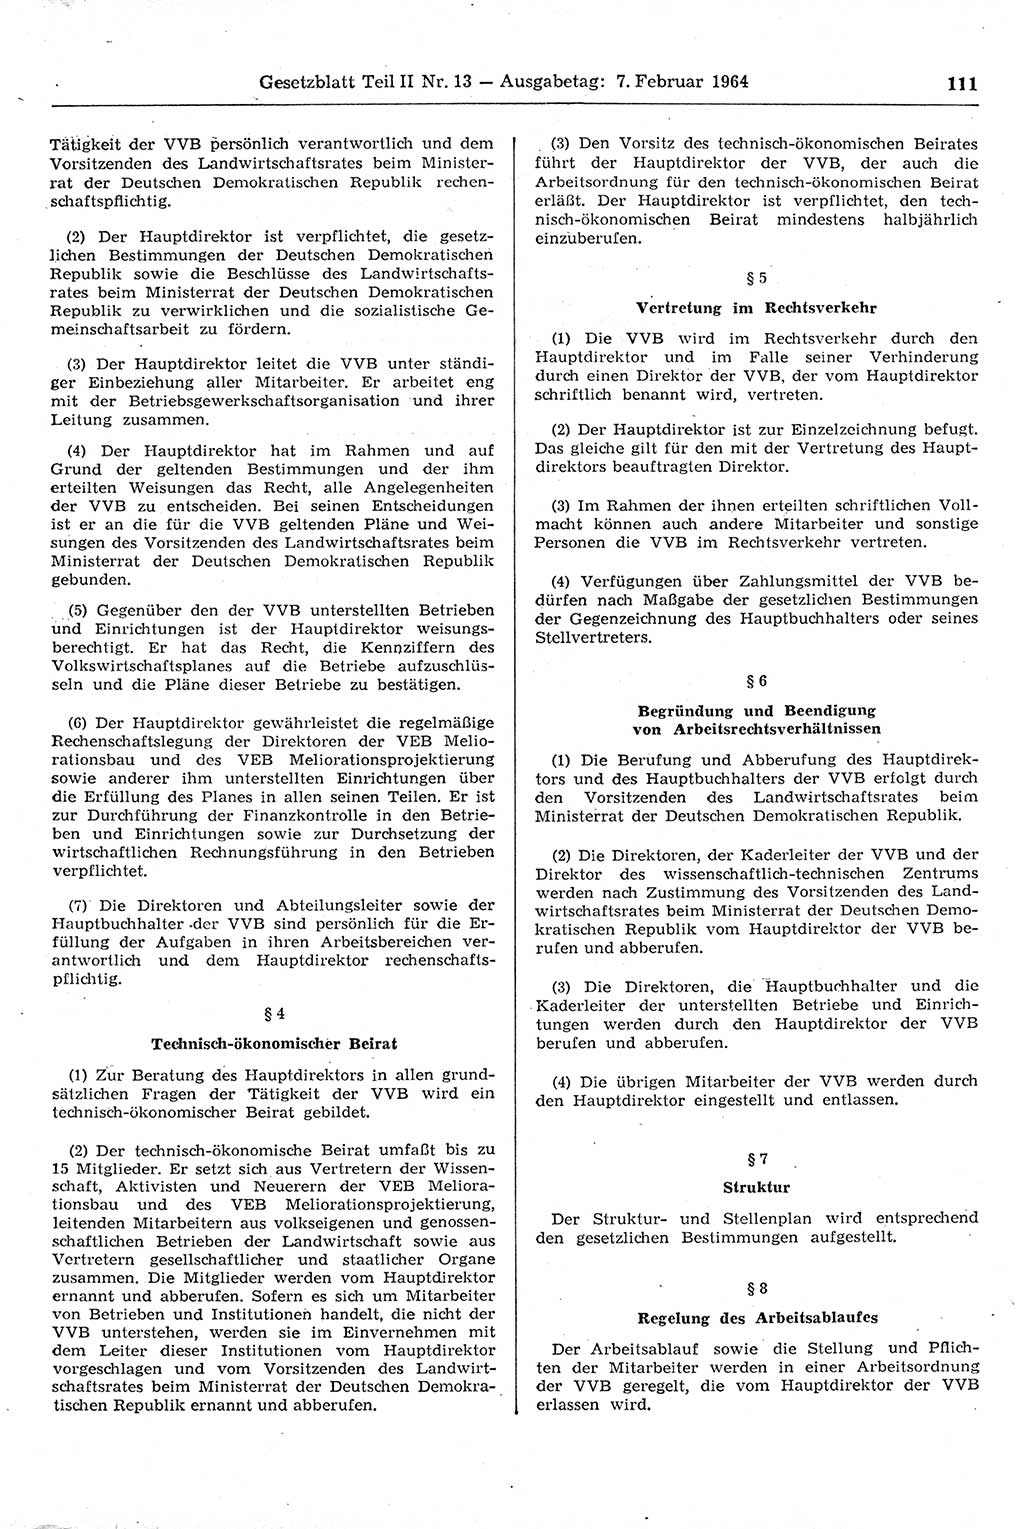 Gesetzblatt (GBl.) der Deutschen Demokratischen Republik (DDR) Teil ⅠⅠ 1964, Seite 111 (GBl. DDR ⅠⅠ 1964, S. 111)